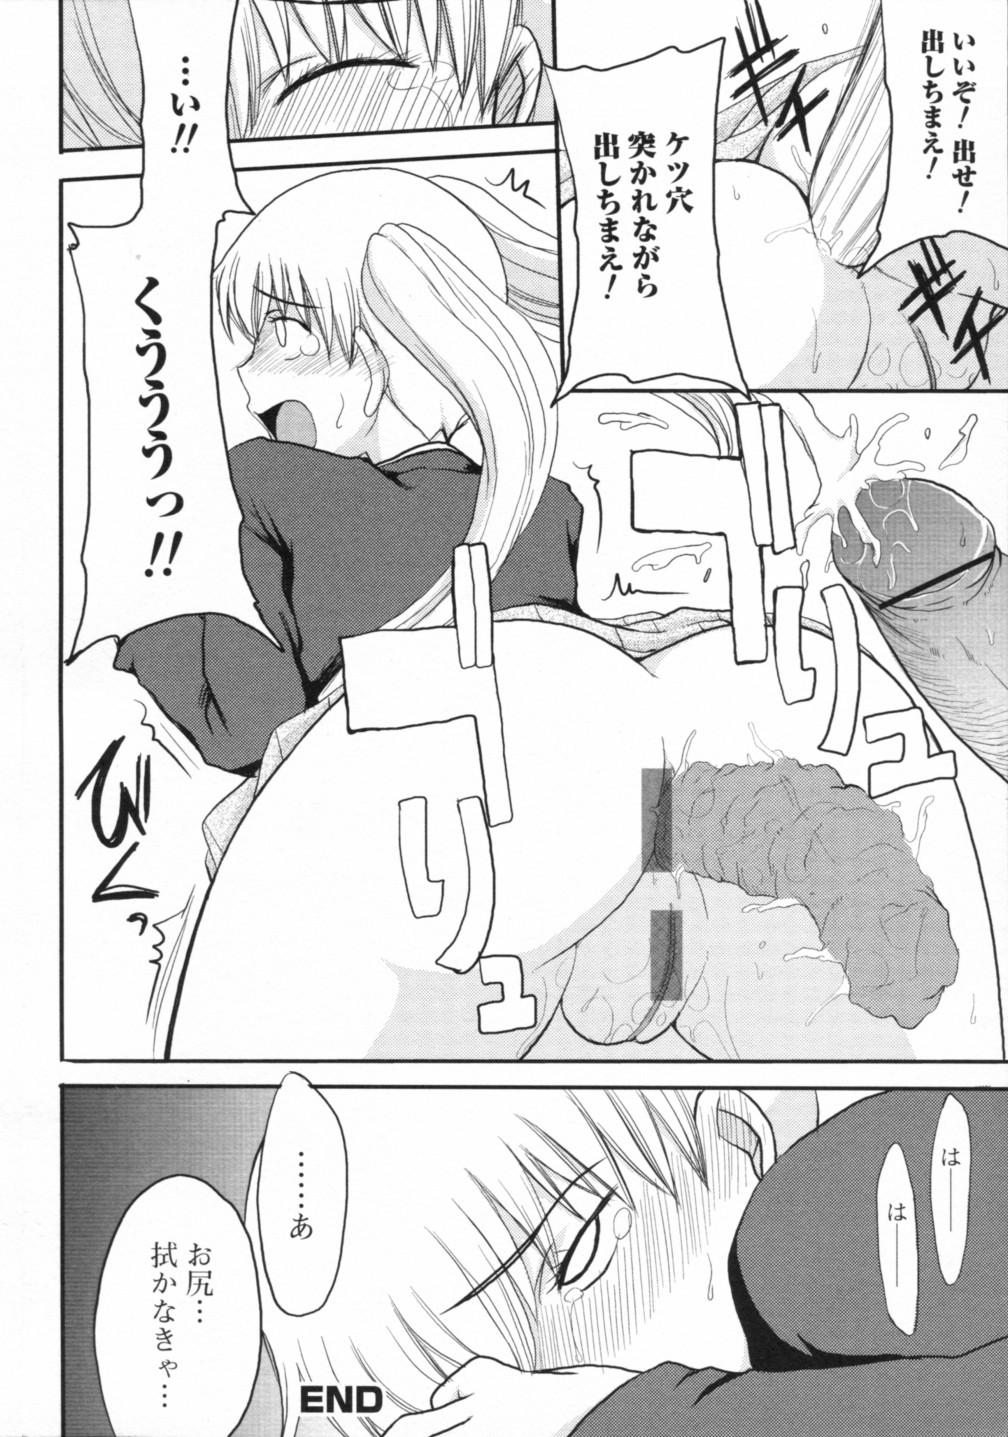 Muscles Nozoite wa Ikenai 2 - Do Not Peep! 2 Casero - Page 147